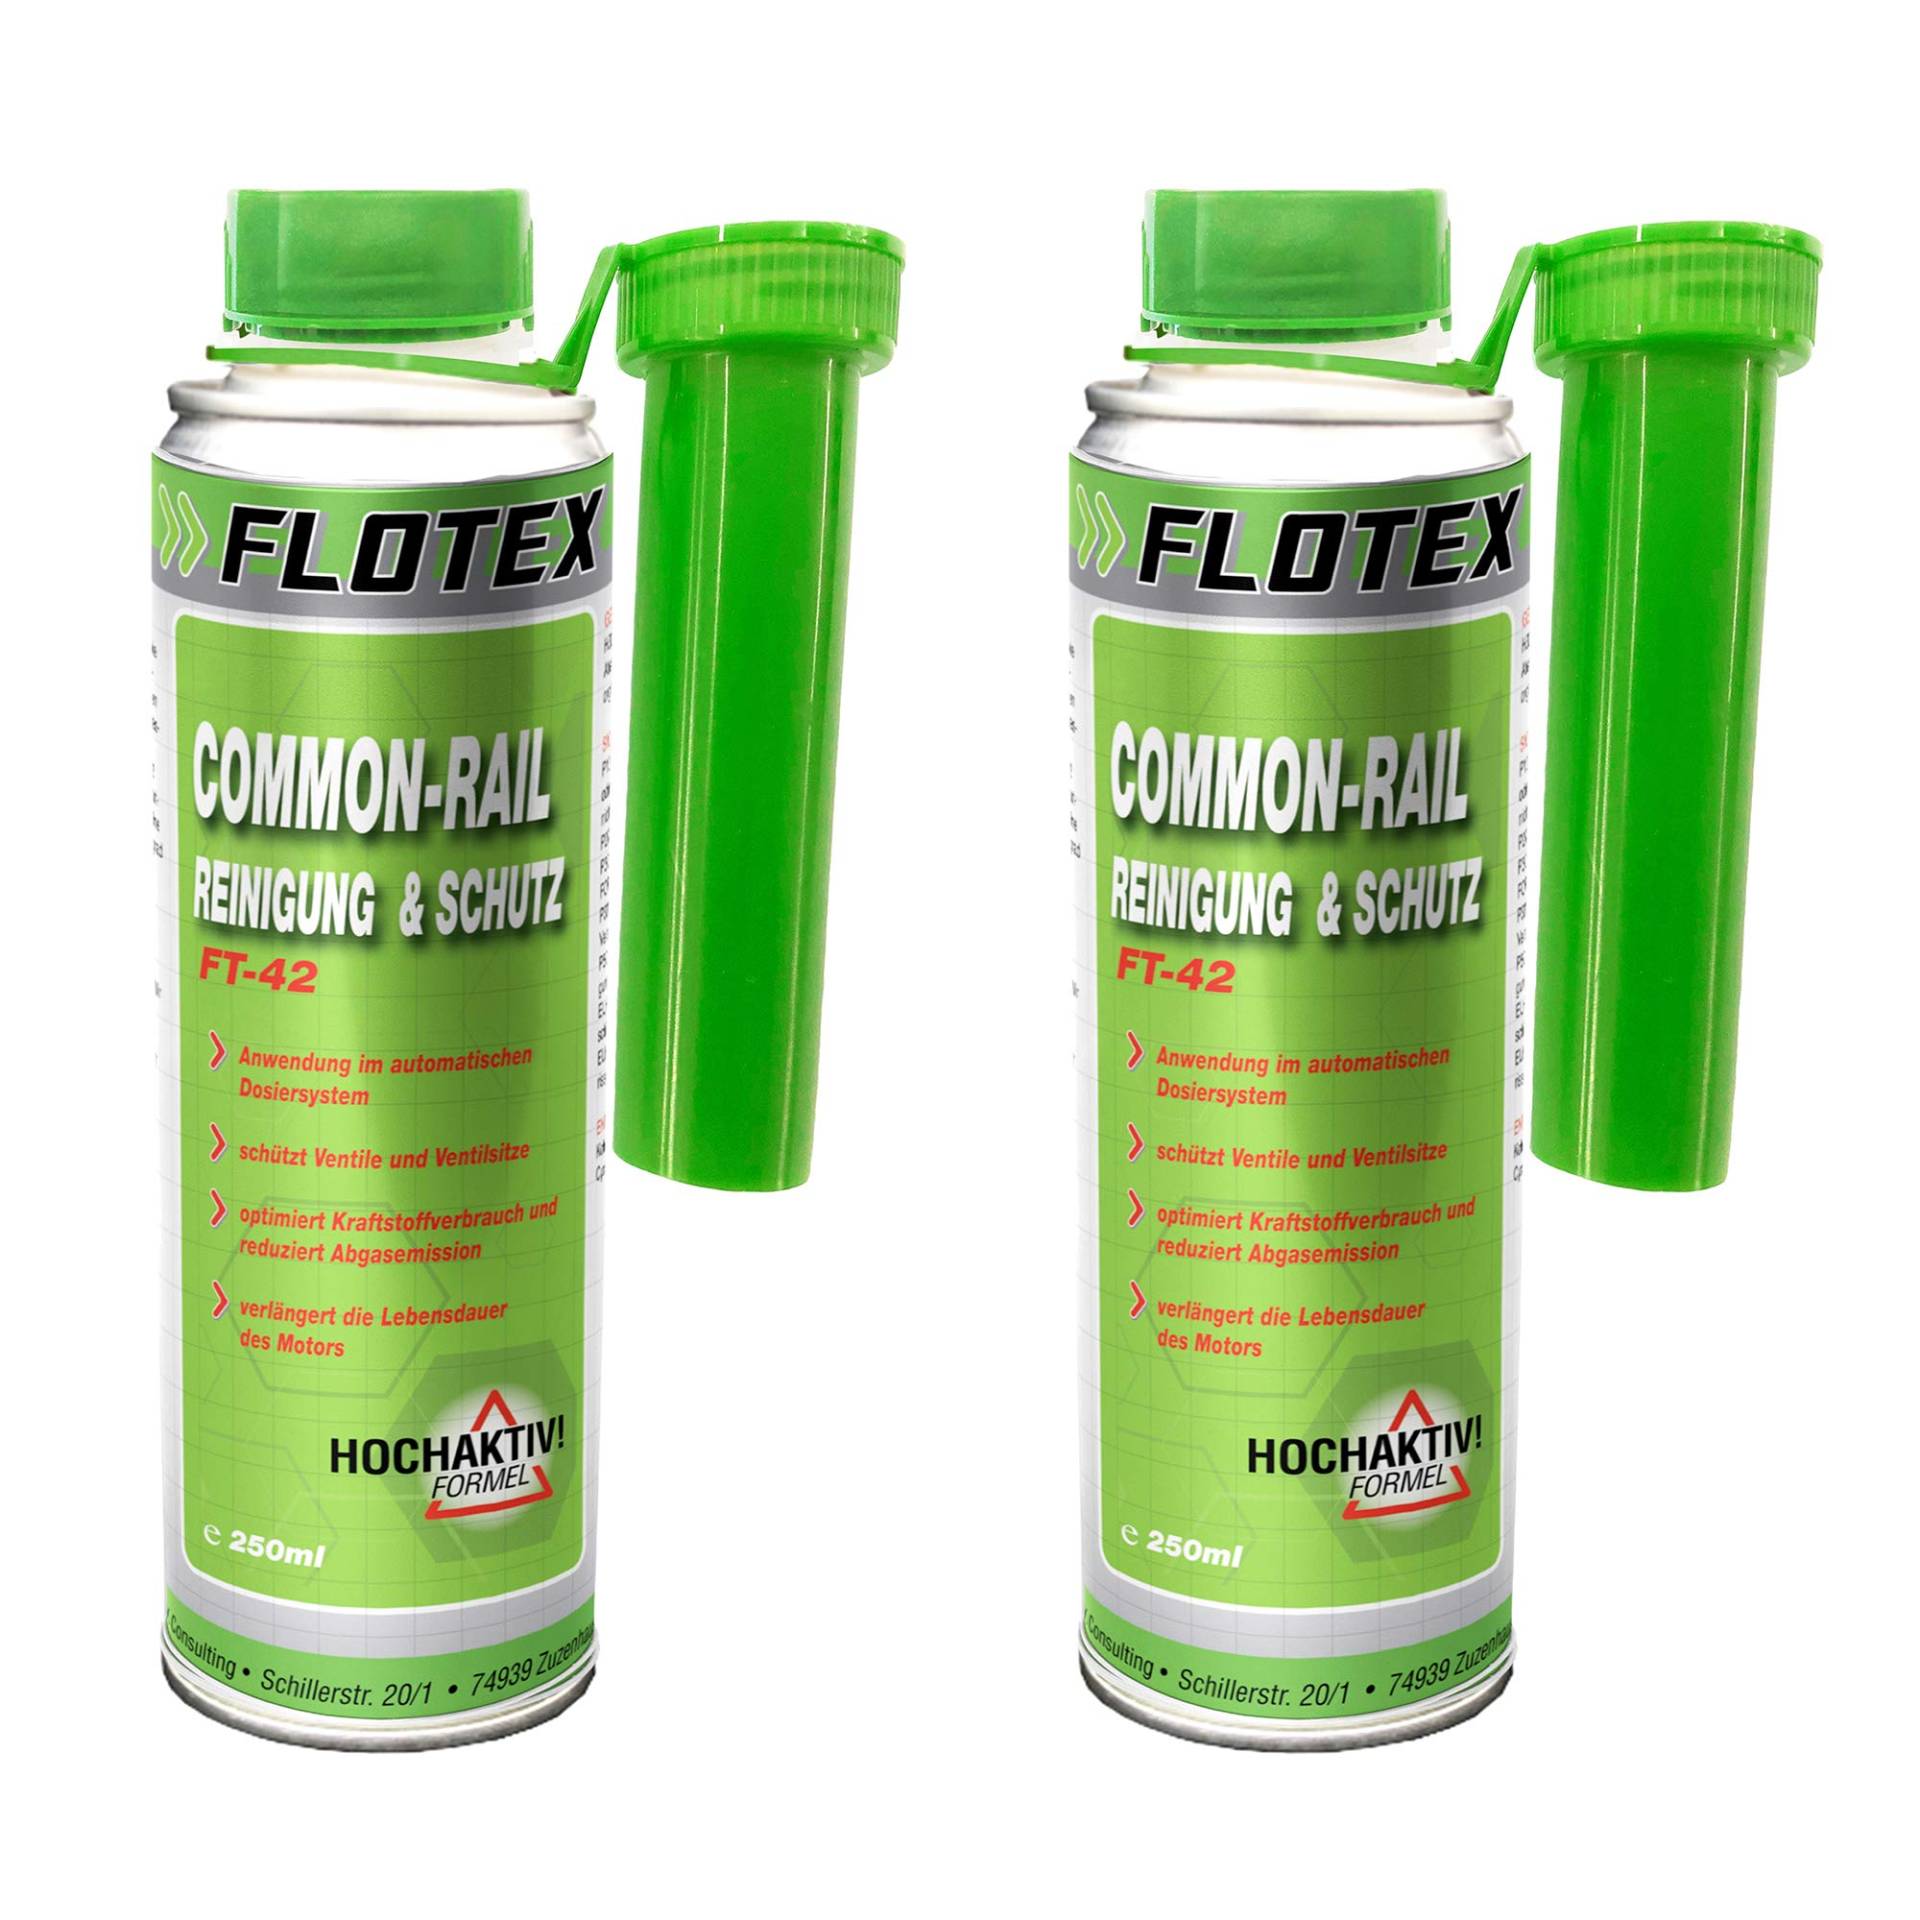 Flotex Diesel Common-Rail Reinigung & Schutz, 2 x 250ml Systemreiniger und Schutz Additiv für Dieselmotoren von Flotex